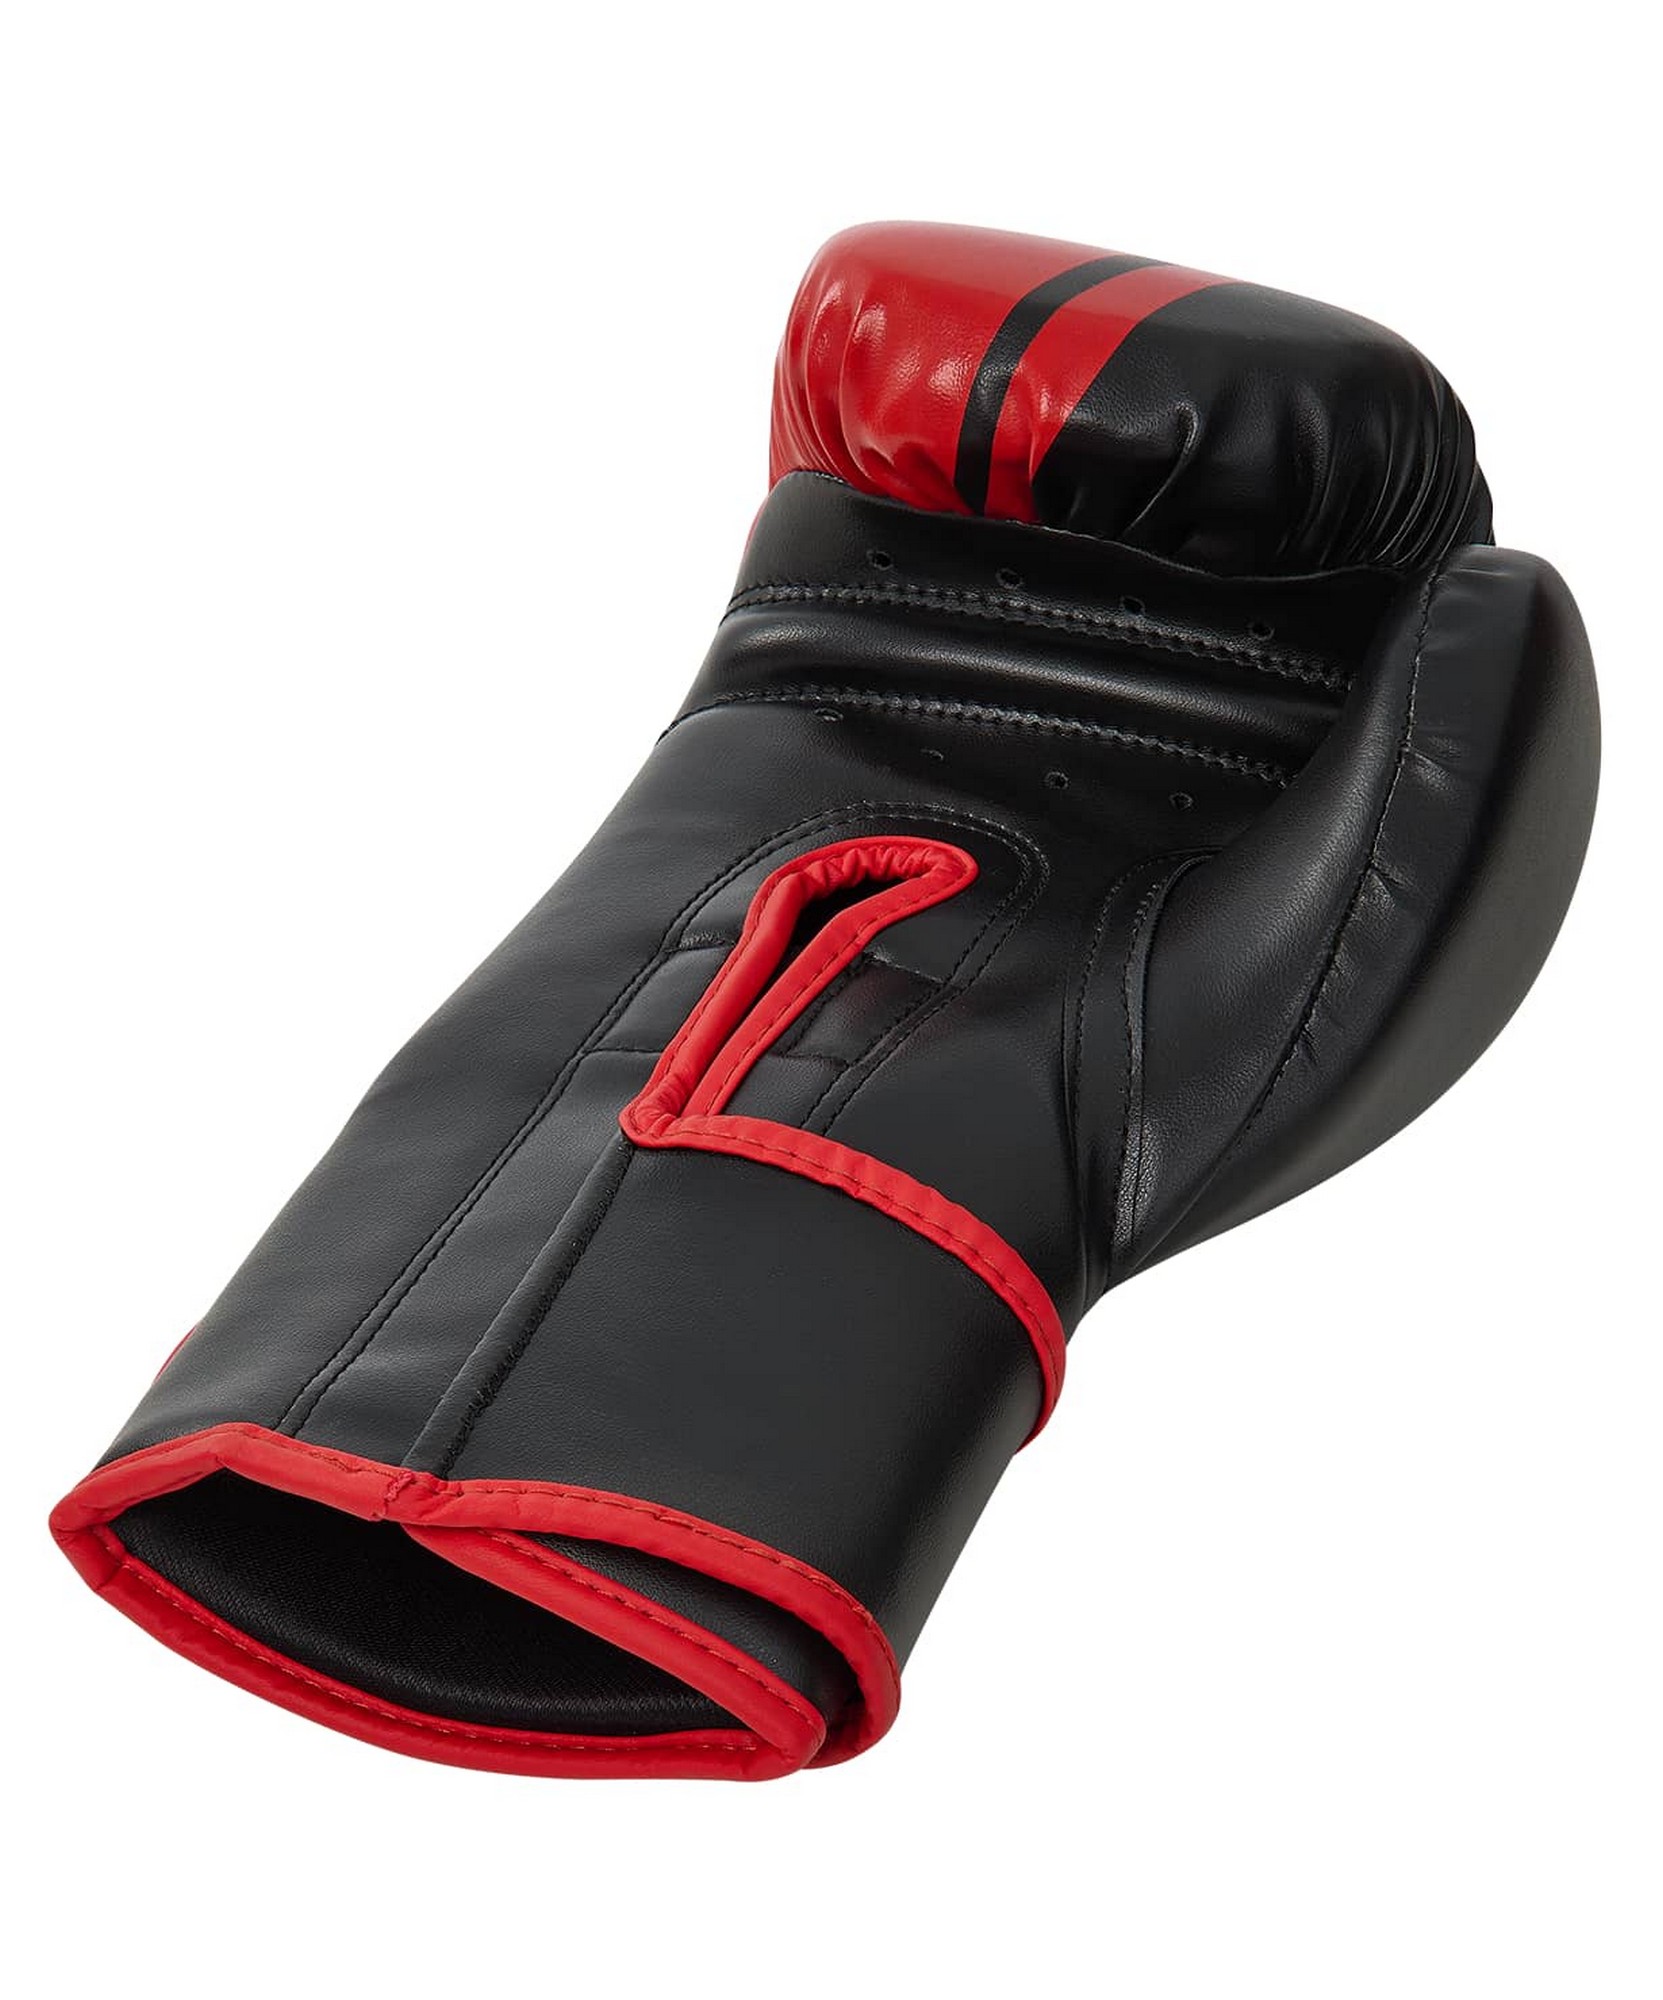 Перчатки боксерские Insane Montu ПУ, 8 oz, красный 1663_2000